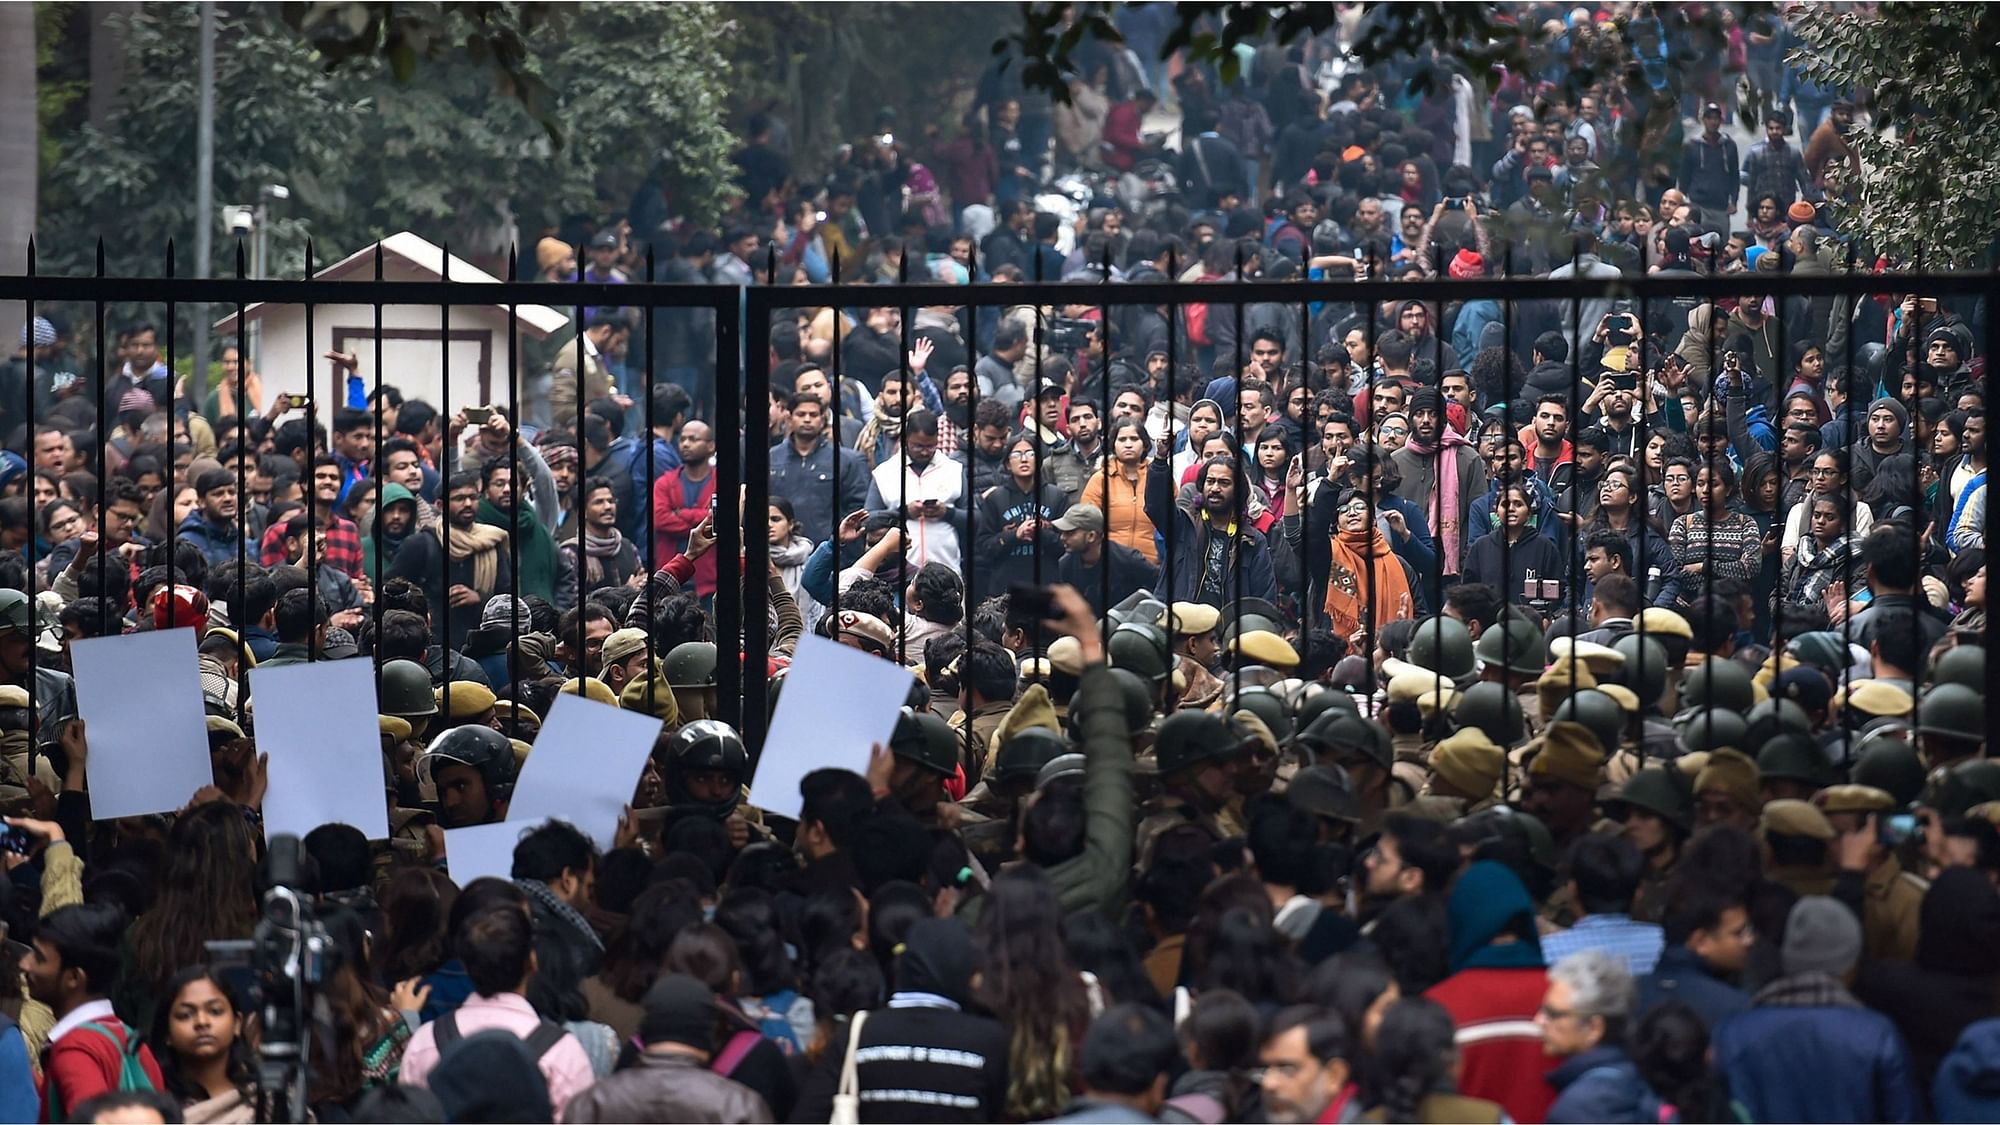 जवाहर लाल नेहरू यूनिवर्सिटी कैंपस में हुई हिं सा के मामले में पहचाने गए 9 छात्रों से दिल्ली पुलिस आज सोमवार को पूछताछ शुरू करेगी.